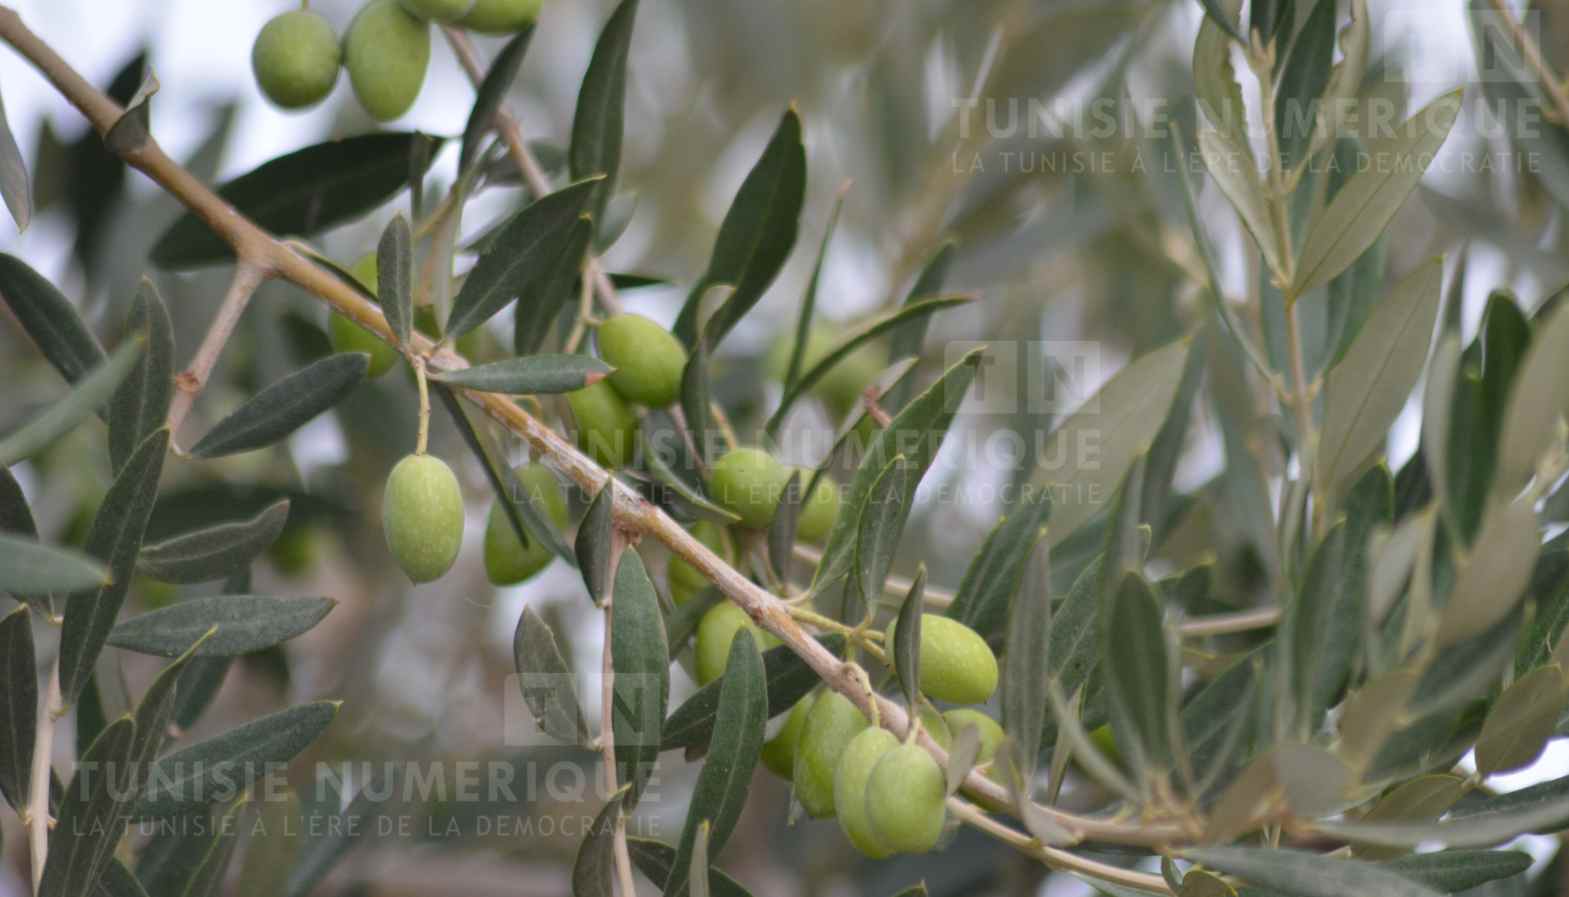 Béja: La production des olives est estimée à 32 mille tonnes